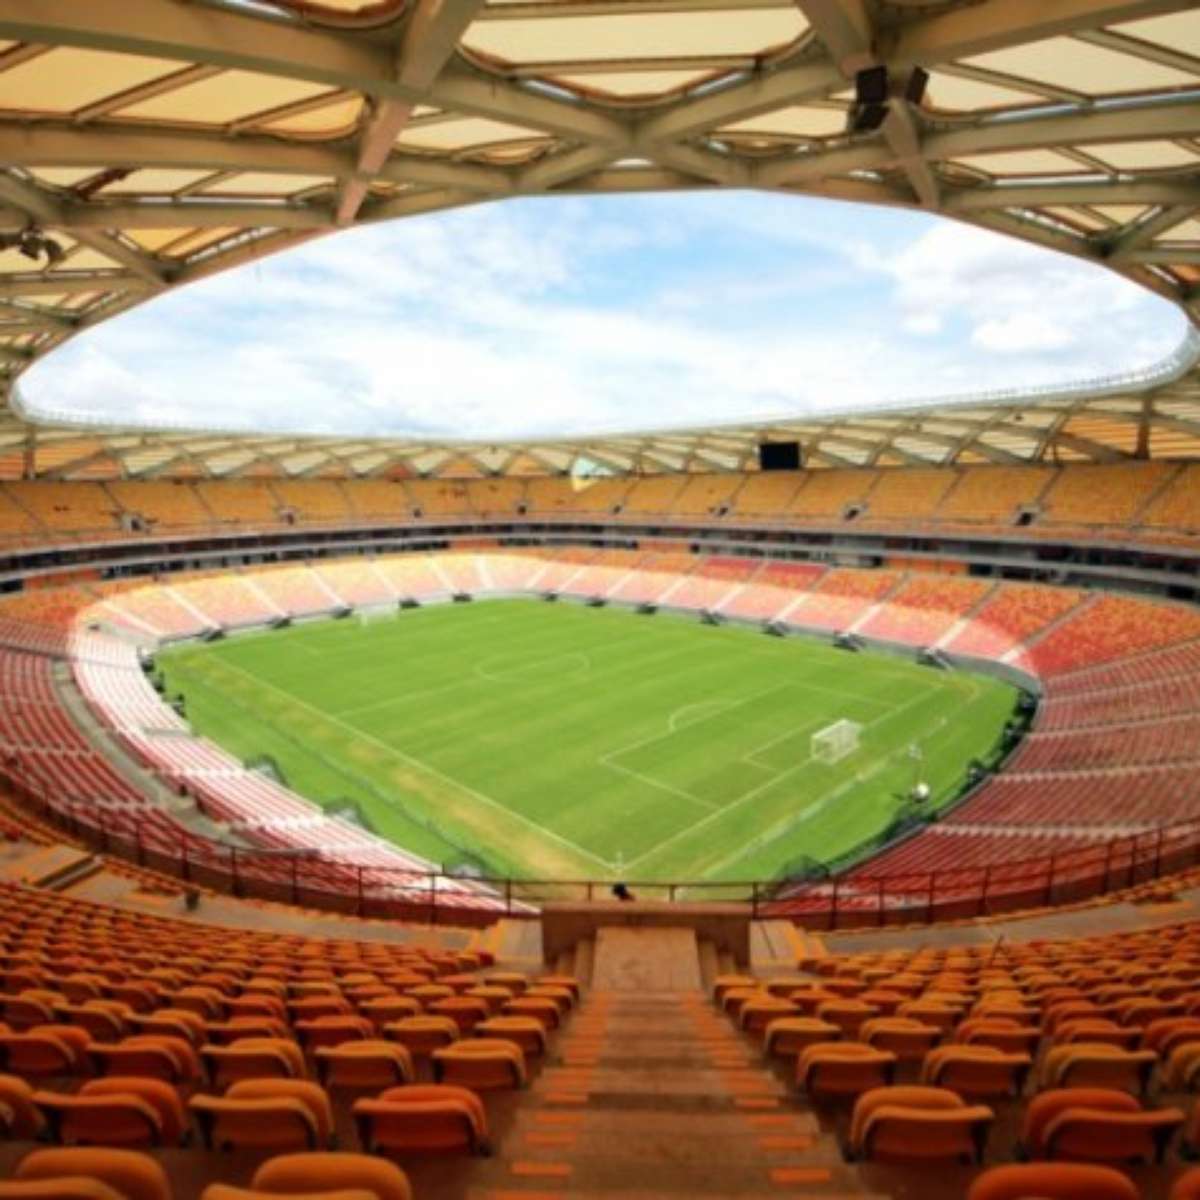 Copa 2014: seleções, estádios, jogos e mais – Terra  Futebol  internacional, Internacional futebol clube, Sc internacional